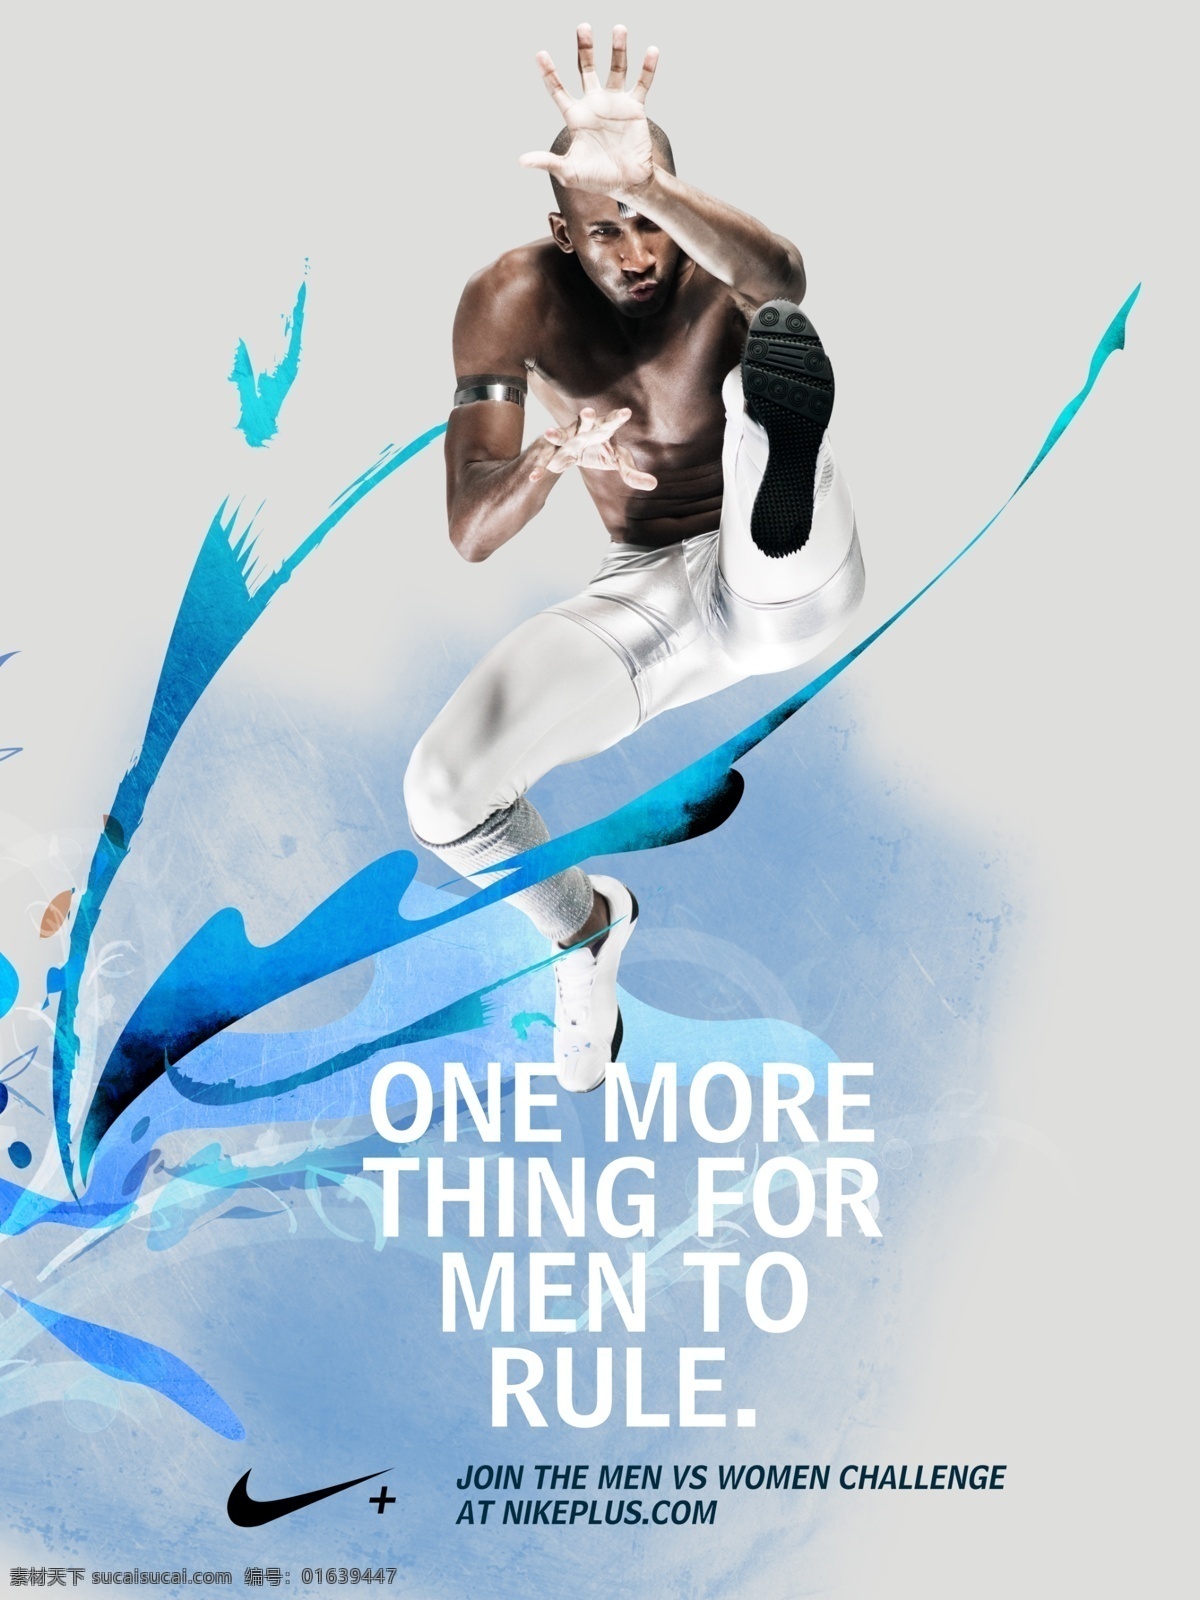 耐克 nike 商业 时尚 体育 广告 大片 封面 用品 名牌 创意 流行 非主流 黑人 球鞋 跑鞋 运动裤 田径 跨栏 广告设计模板 源文件